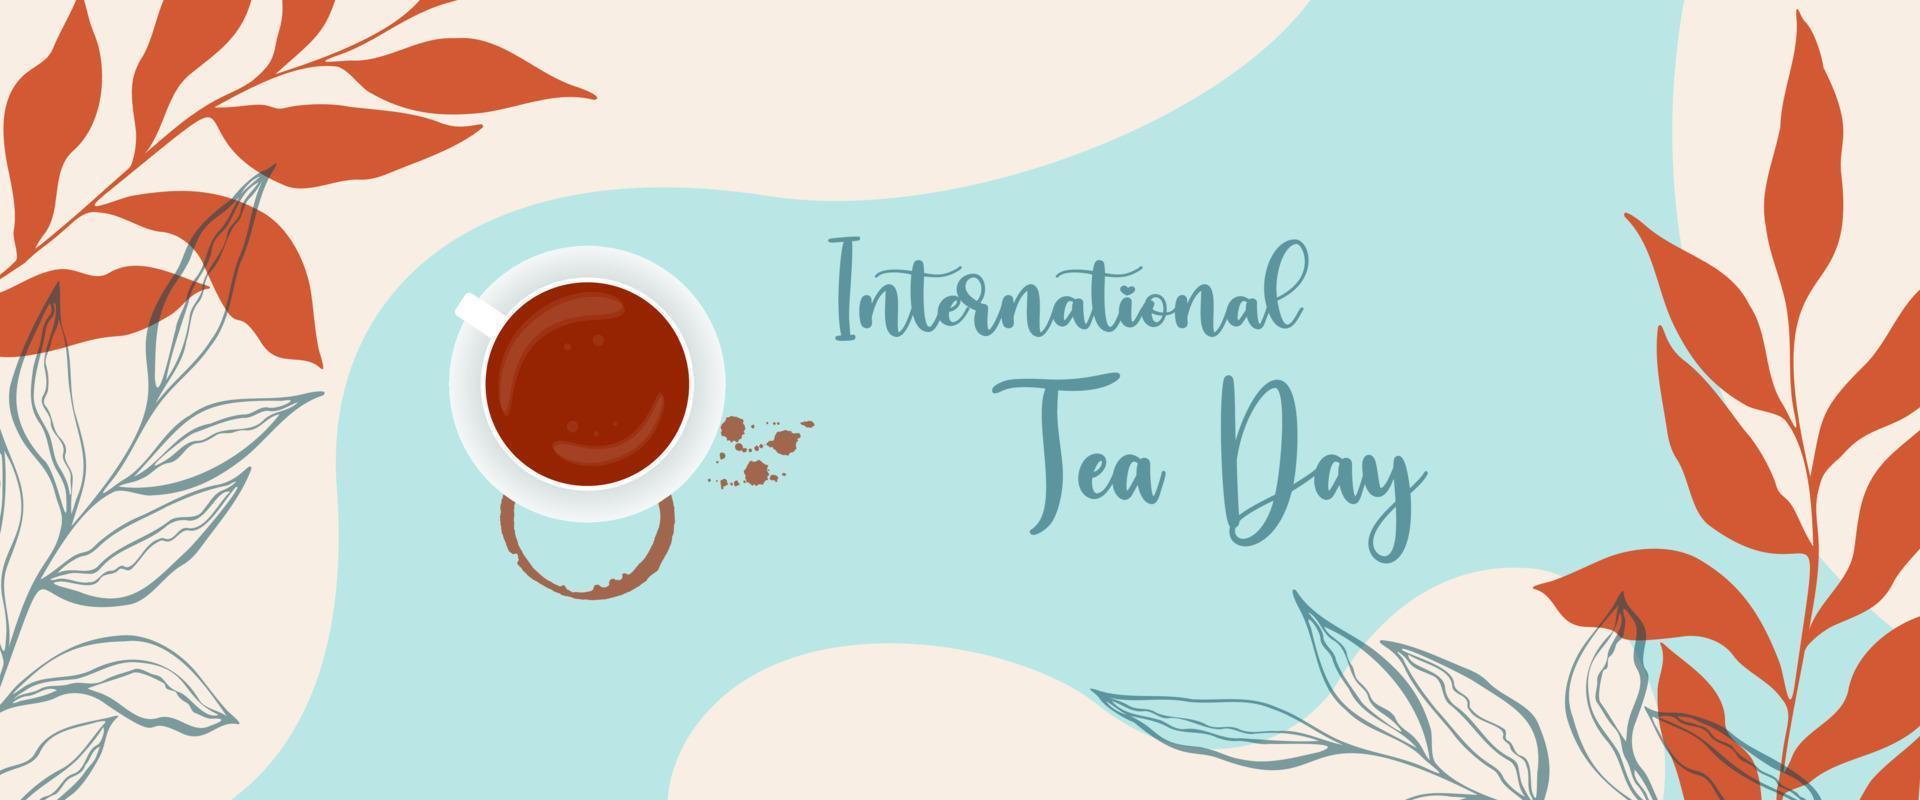 pancarta del día del té en estilo boho con tazas de té y huellas de manchas con gotas, día internacional del té, hojas de garabatos botánicos. vector